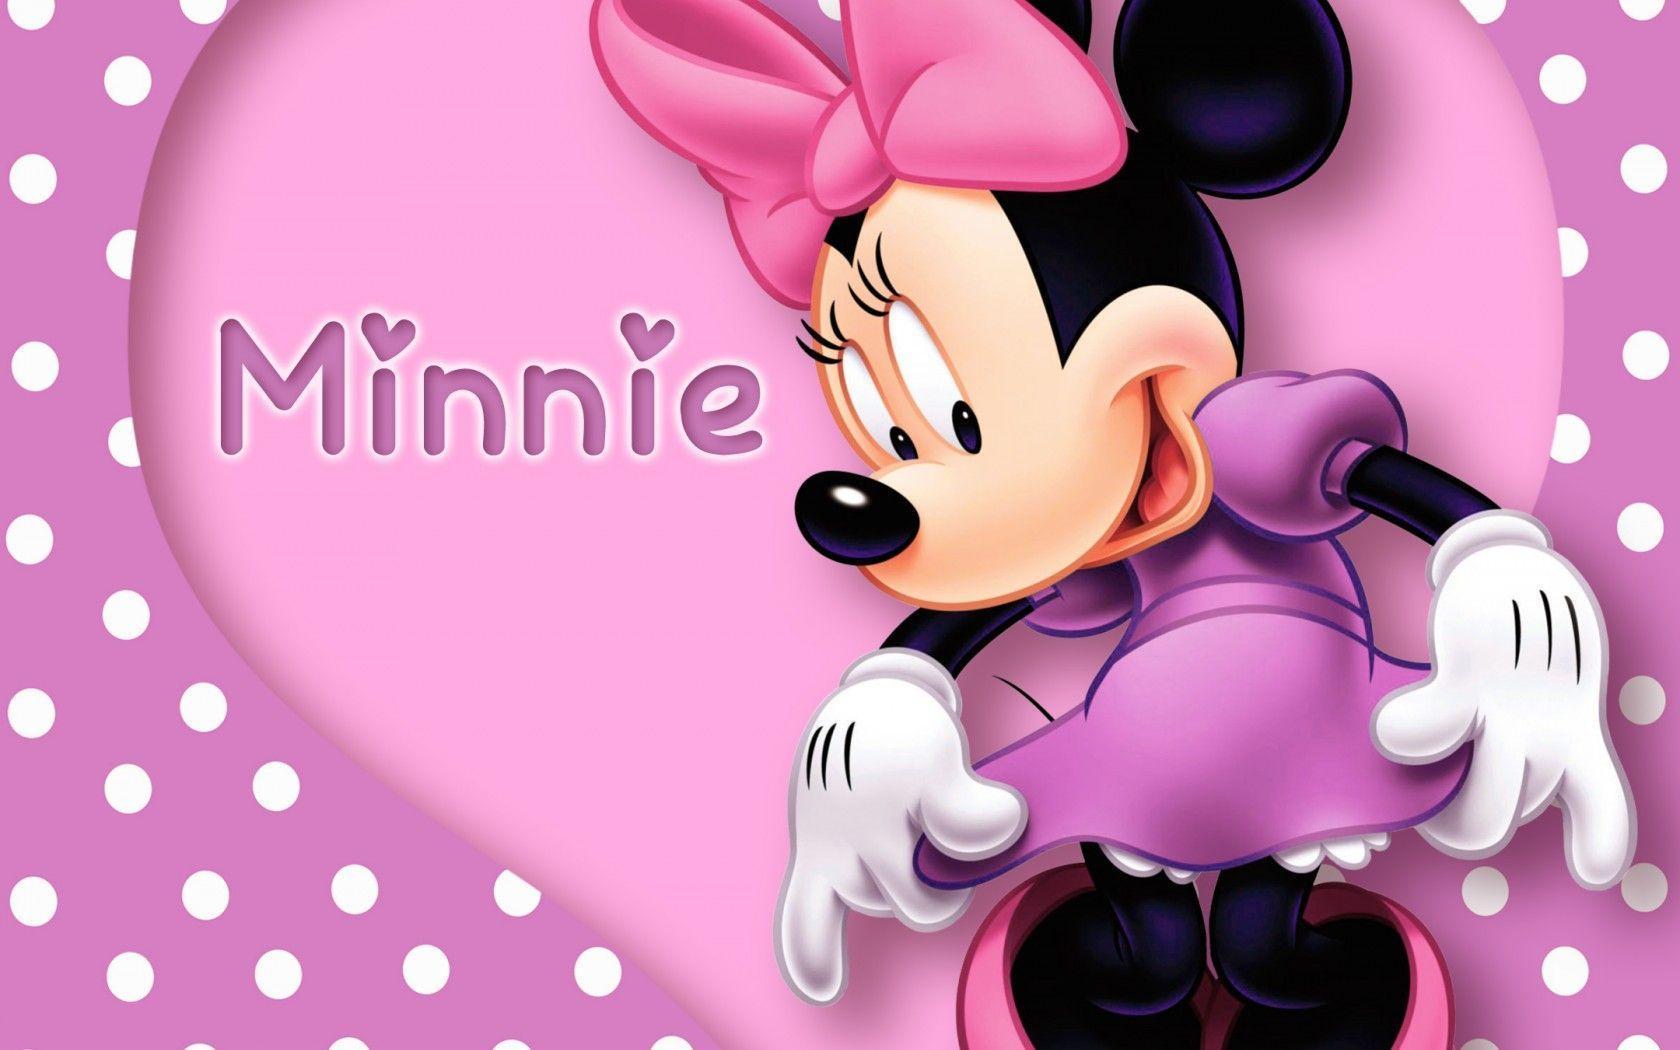 Minnie Wallpaper, mouse, cartoon, disney, pink, purple, polka dots